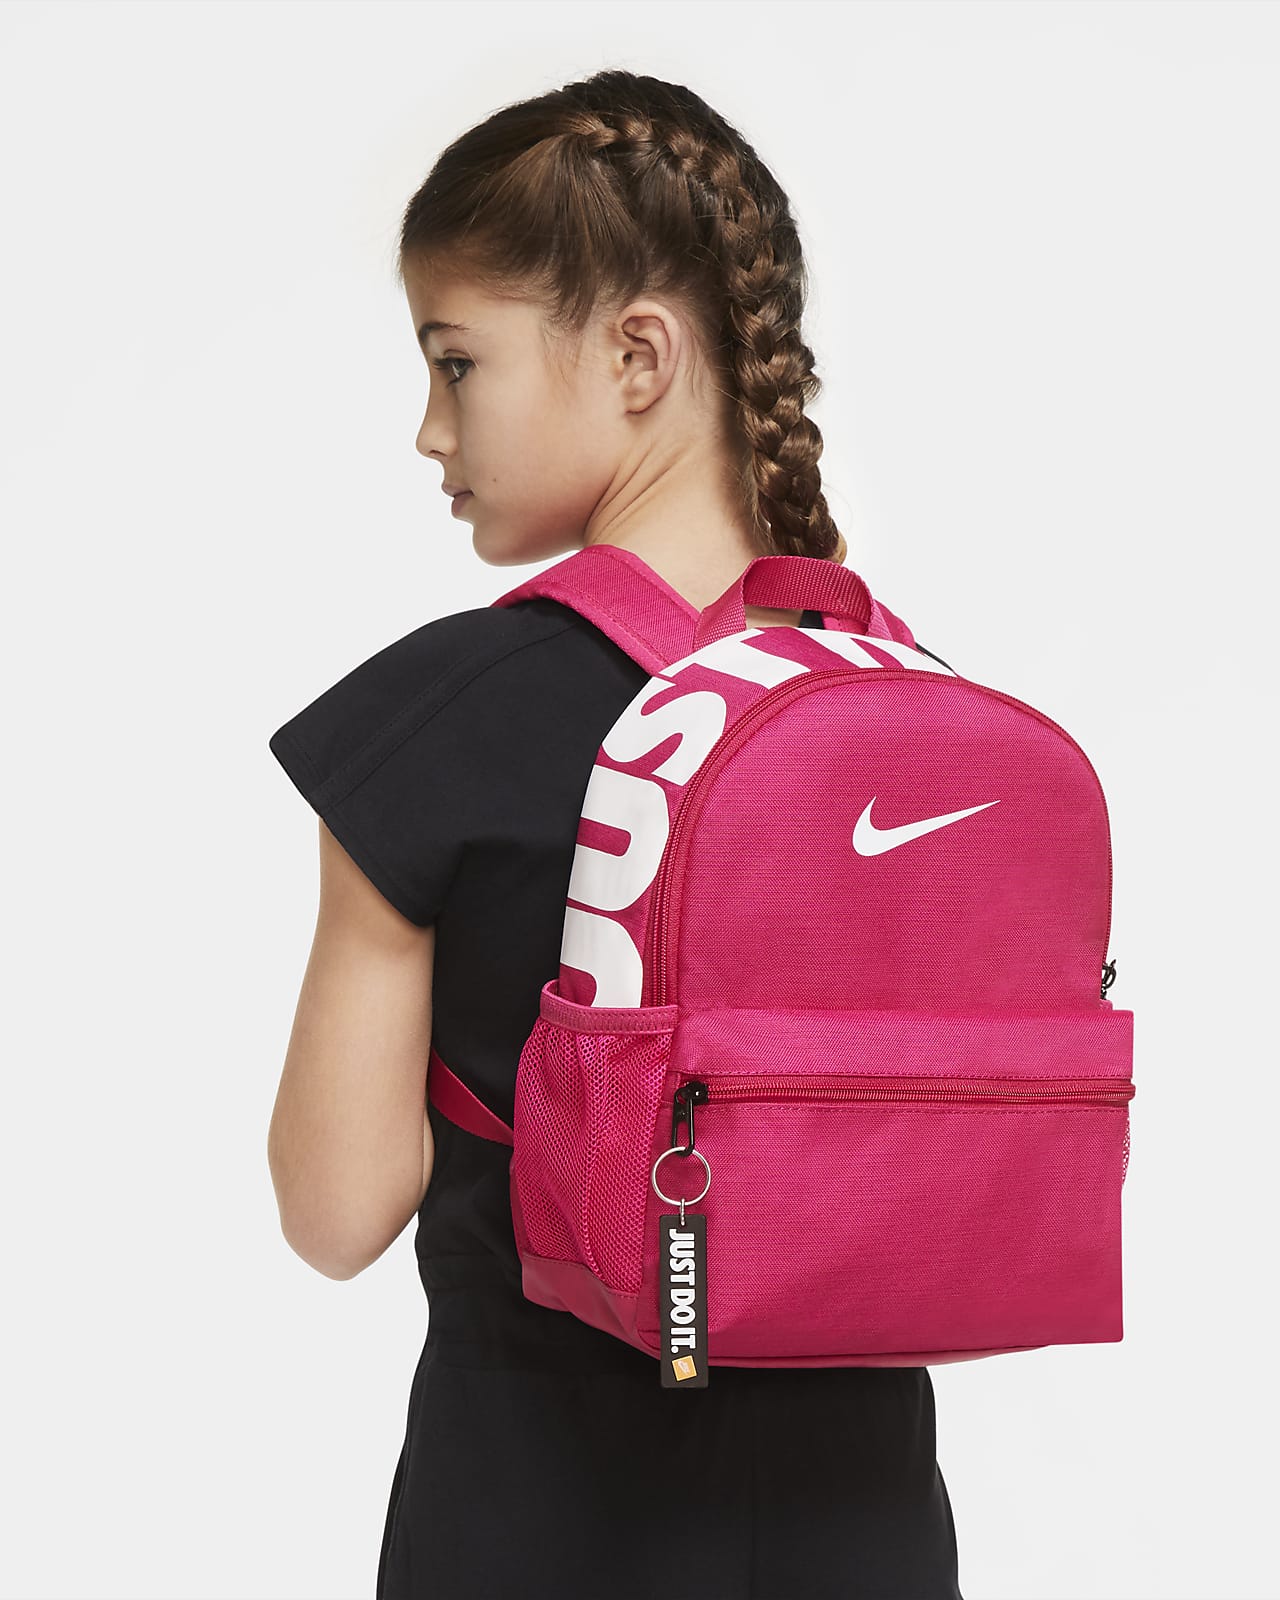 Nike Brasilia JDI Kids' Printed Backpack (Mini)